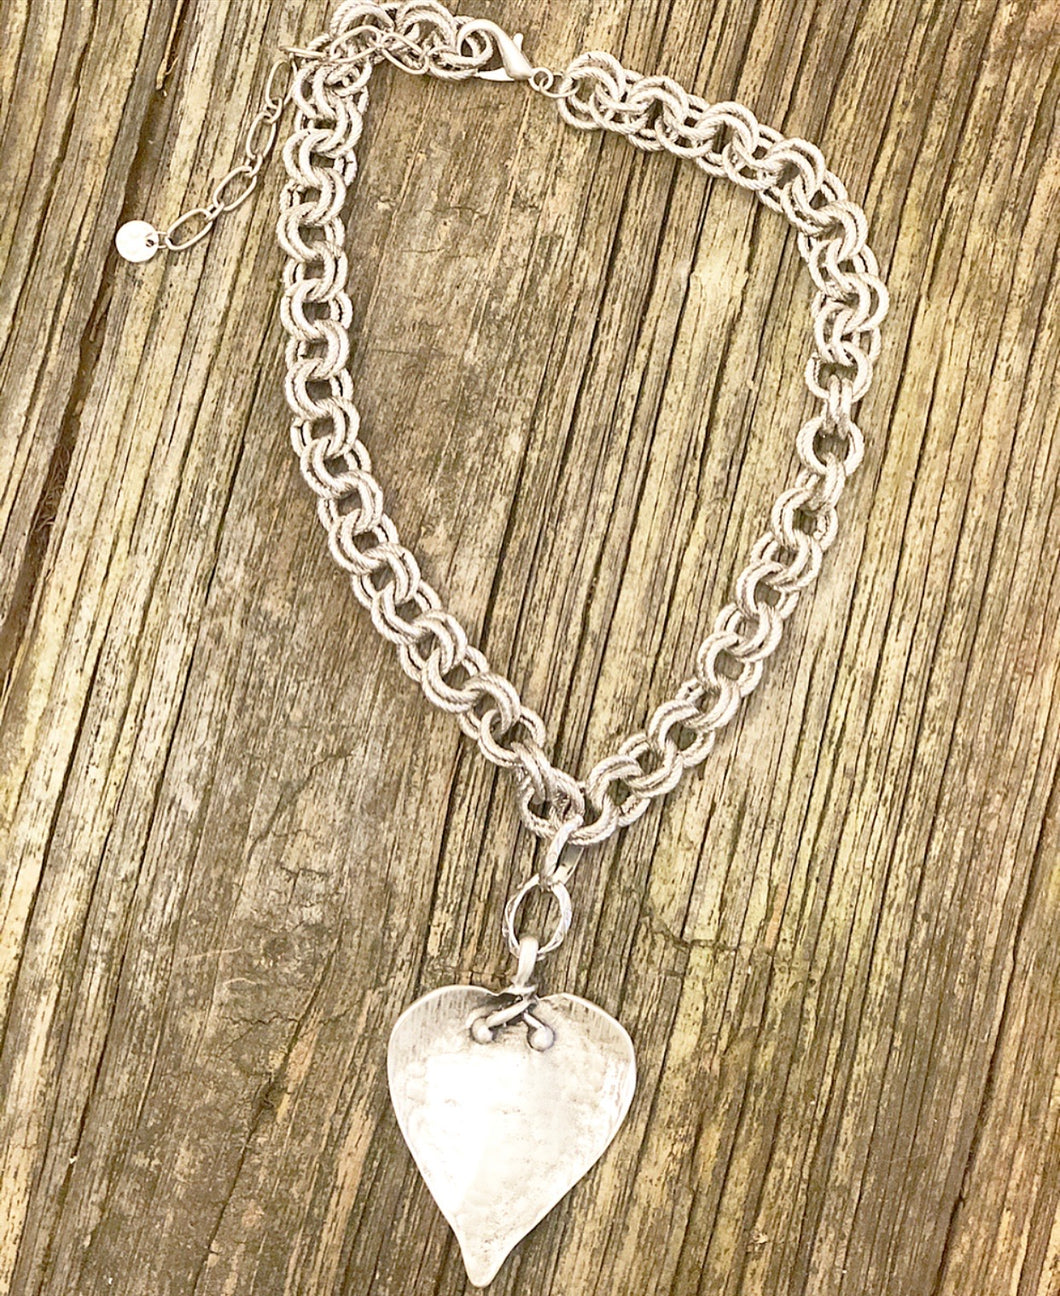 Antique Silver Heart Pendant Necklace